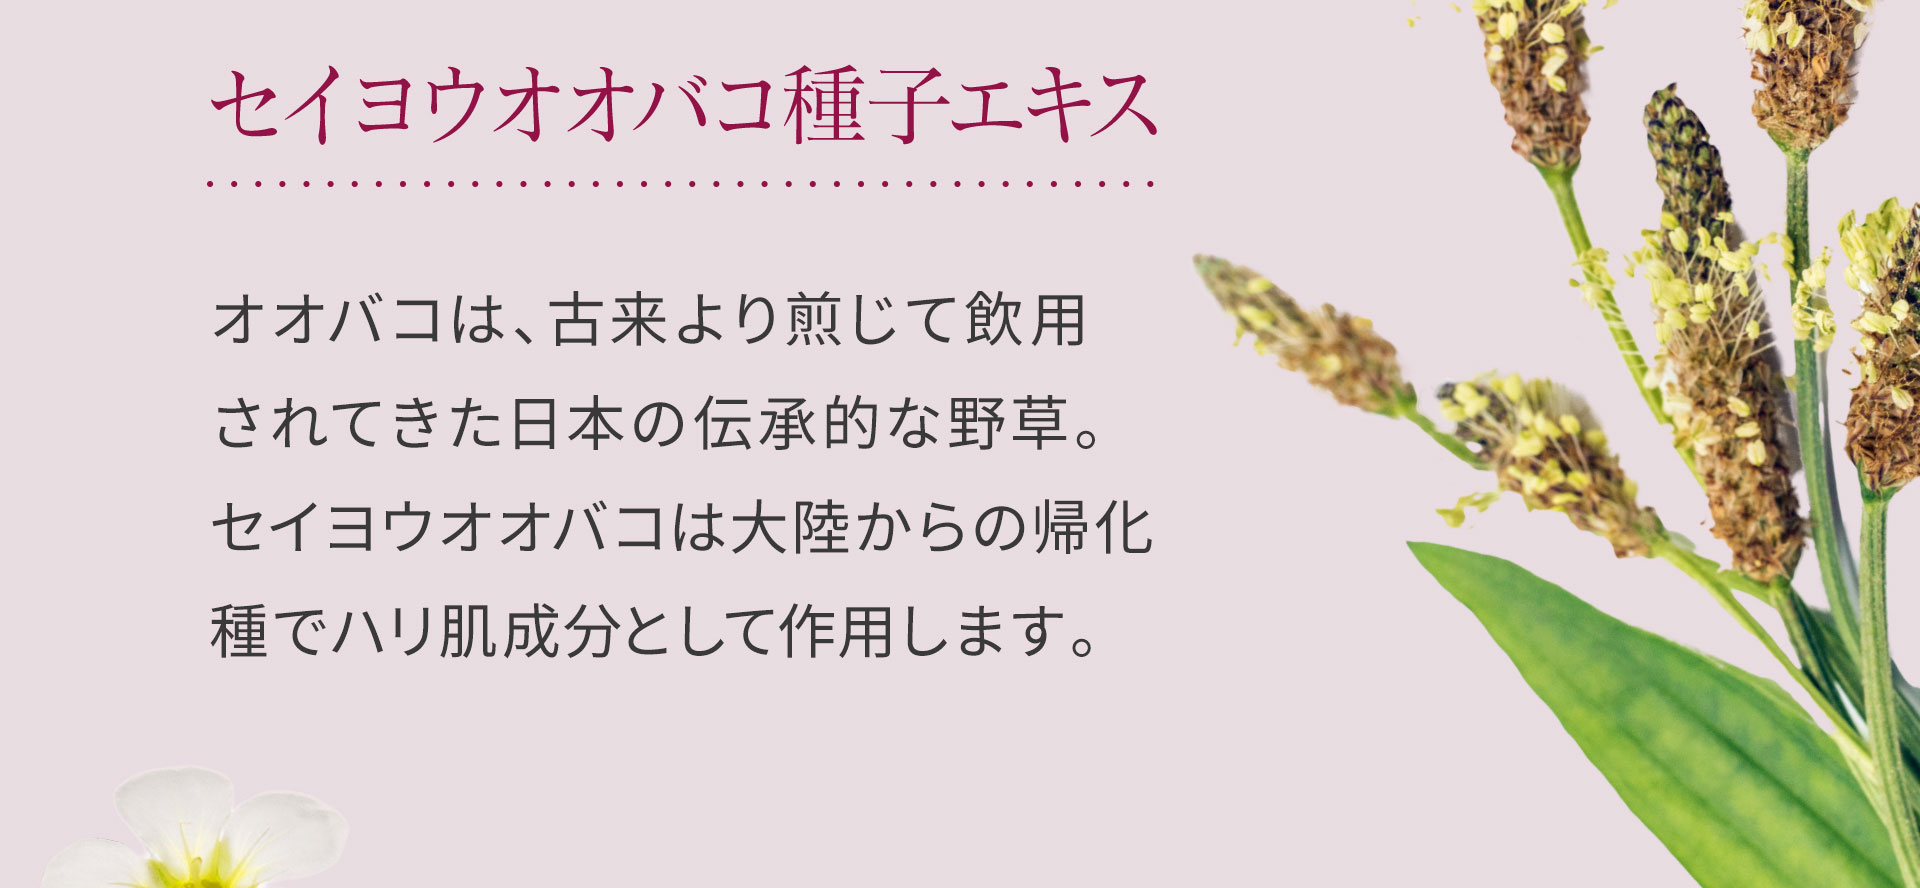 セイヨウオオバコ種子エキス。オオバコは、古来より煎じて飲用されてきた日本の伝承的な野草。セイヨウオオバコは大陸からの帰化種でハリ肌成分として作用します。